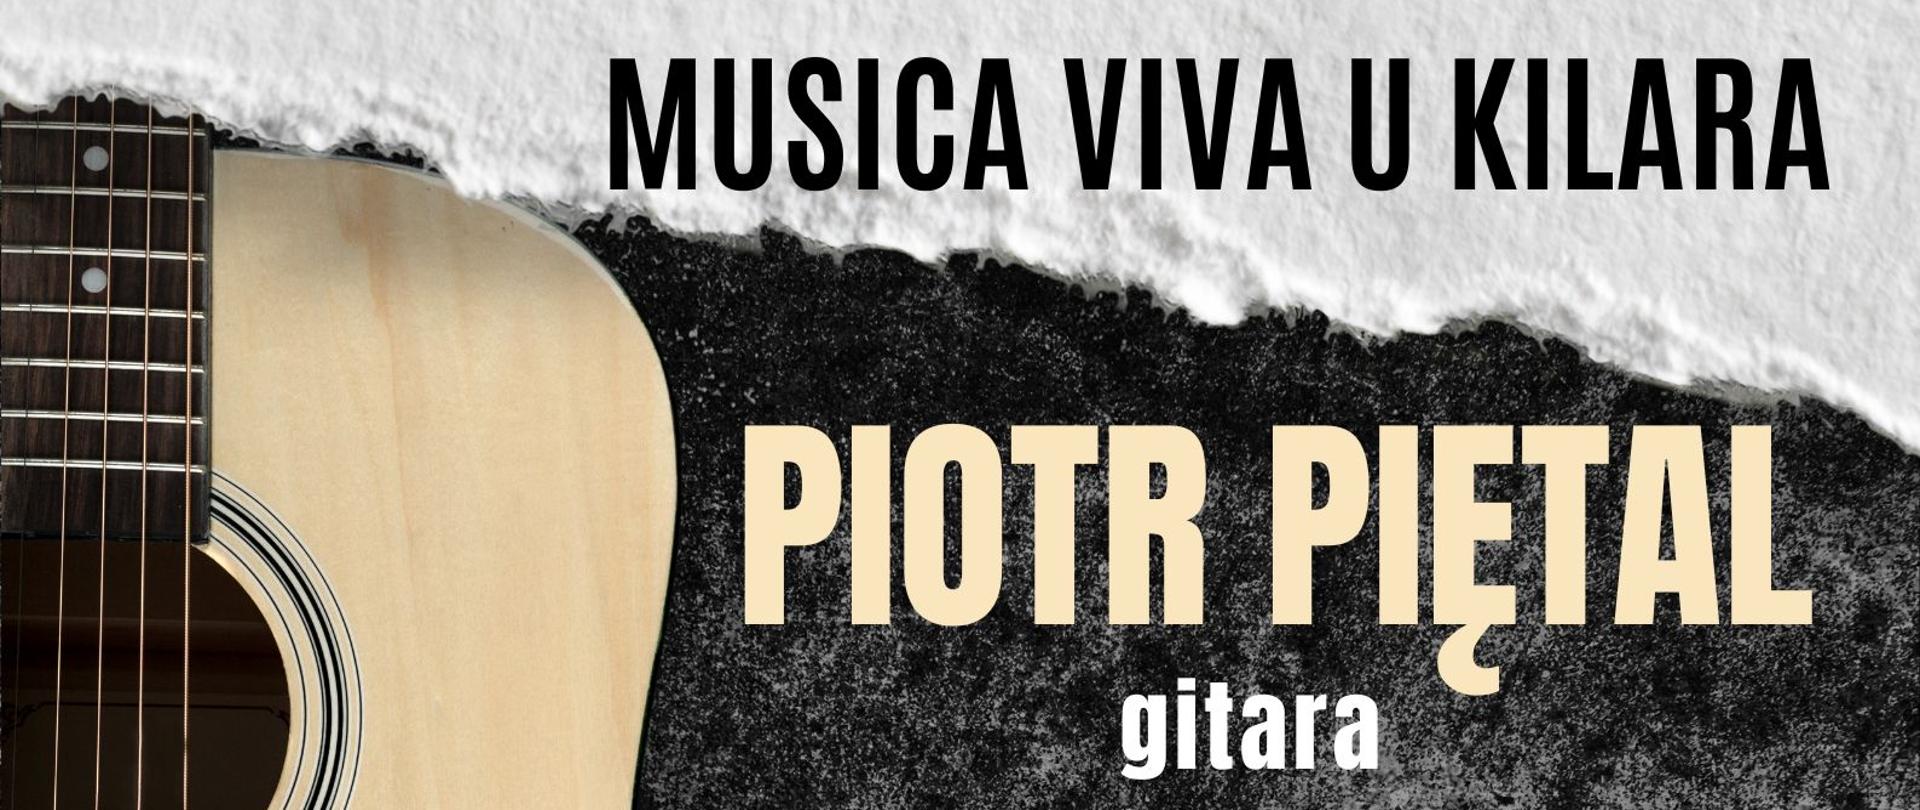 Na plakacie z gitarą w tle informacja o koncercie Piotra Piętala